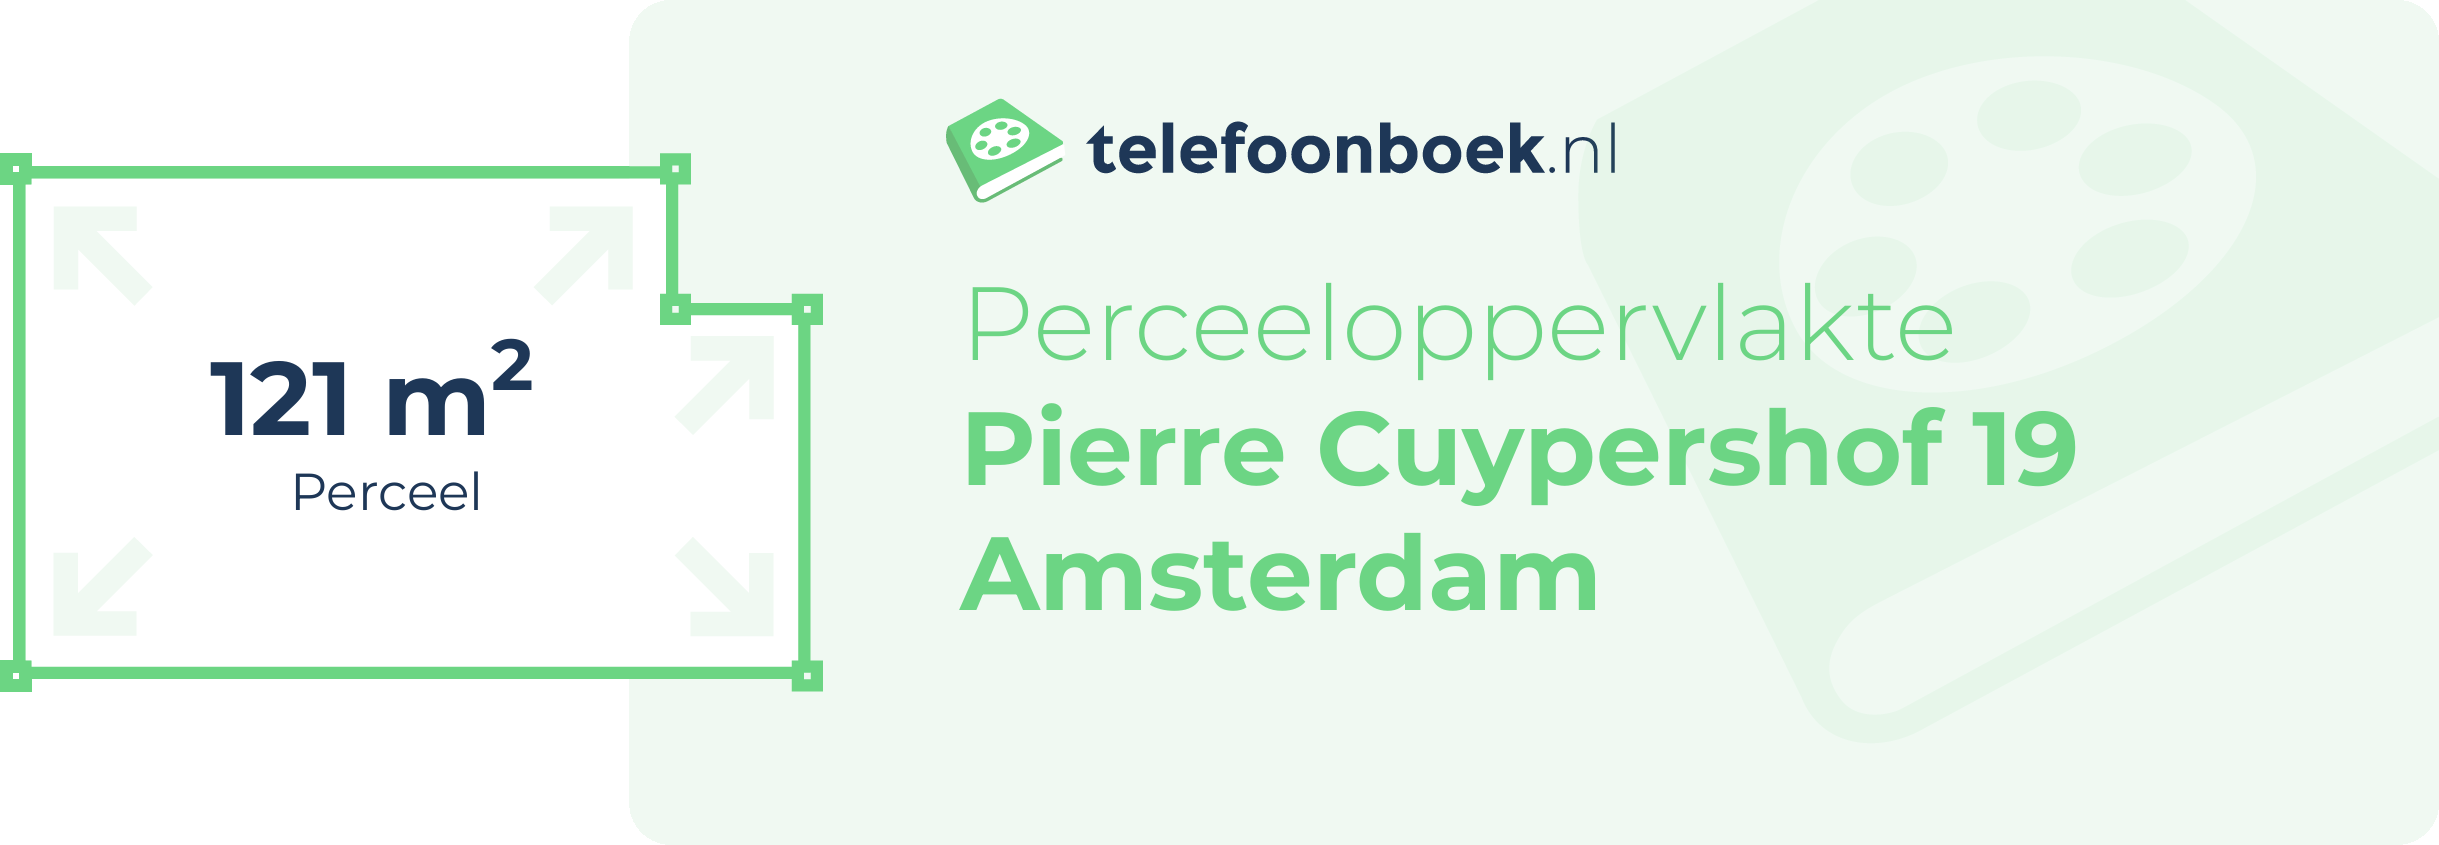 Perceeloppervlakte Pierre Cuypershof 19 Amsterdam